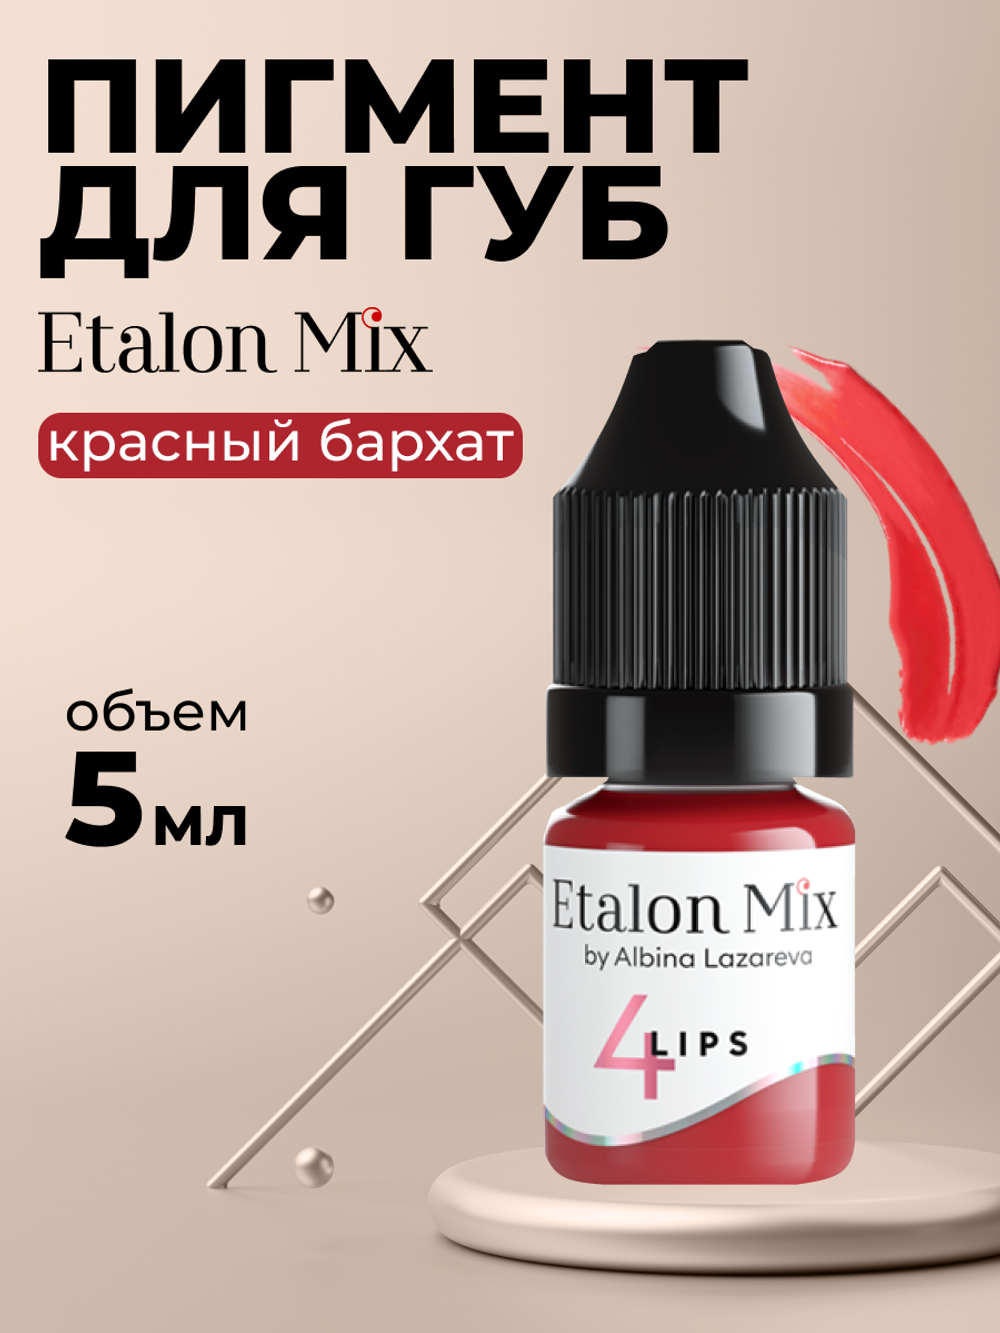 Пигмент для татуажа губ Etalon Mix № 4 Красный бархат by Альбина Лазарева